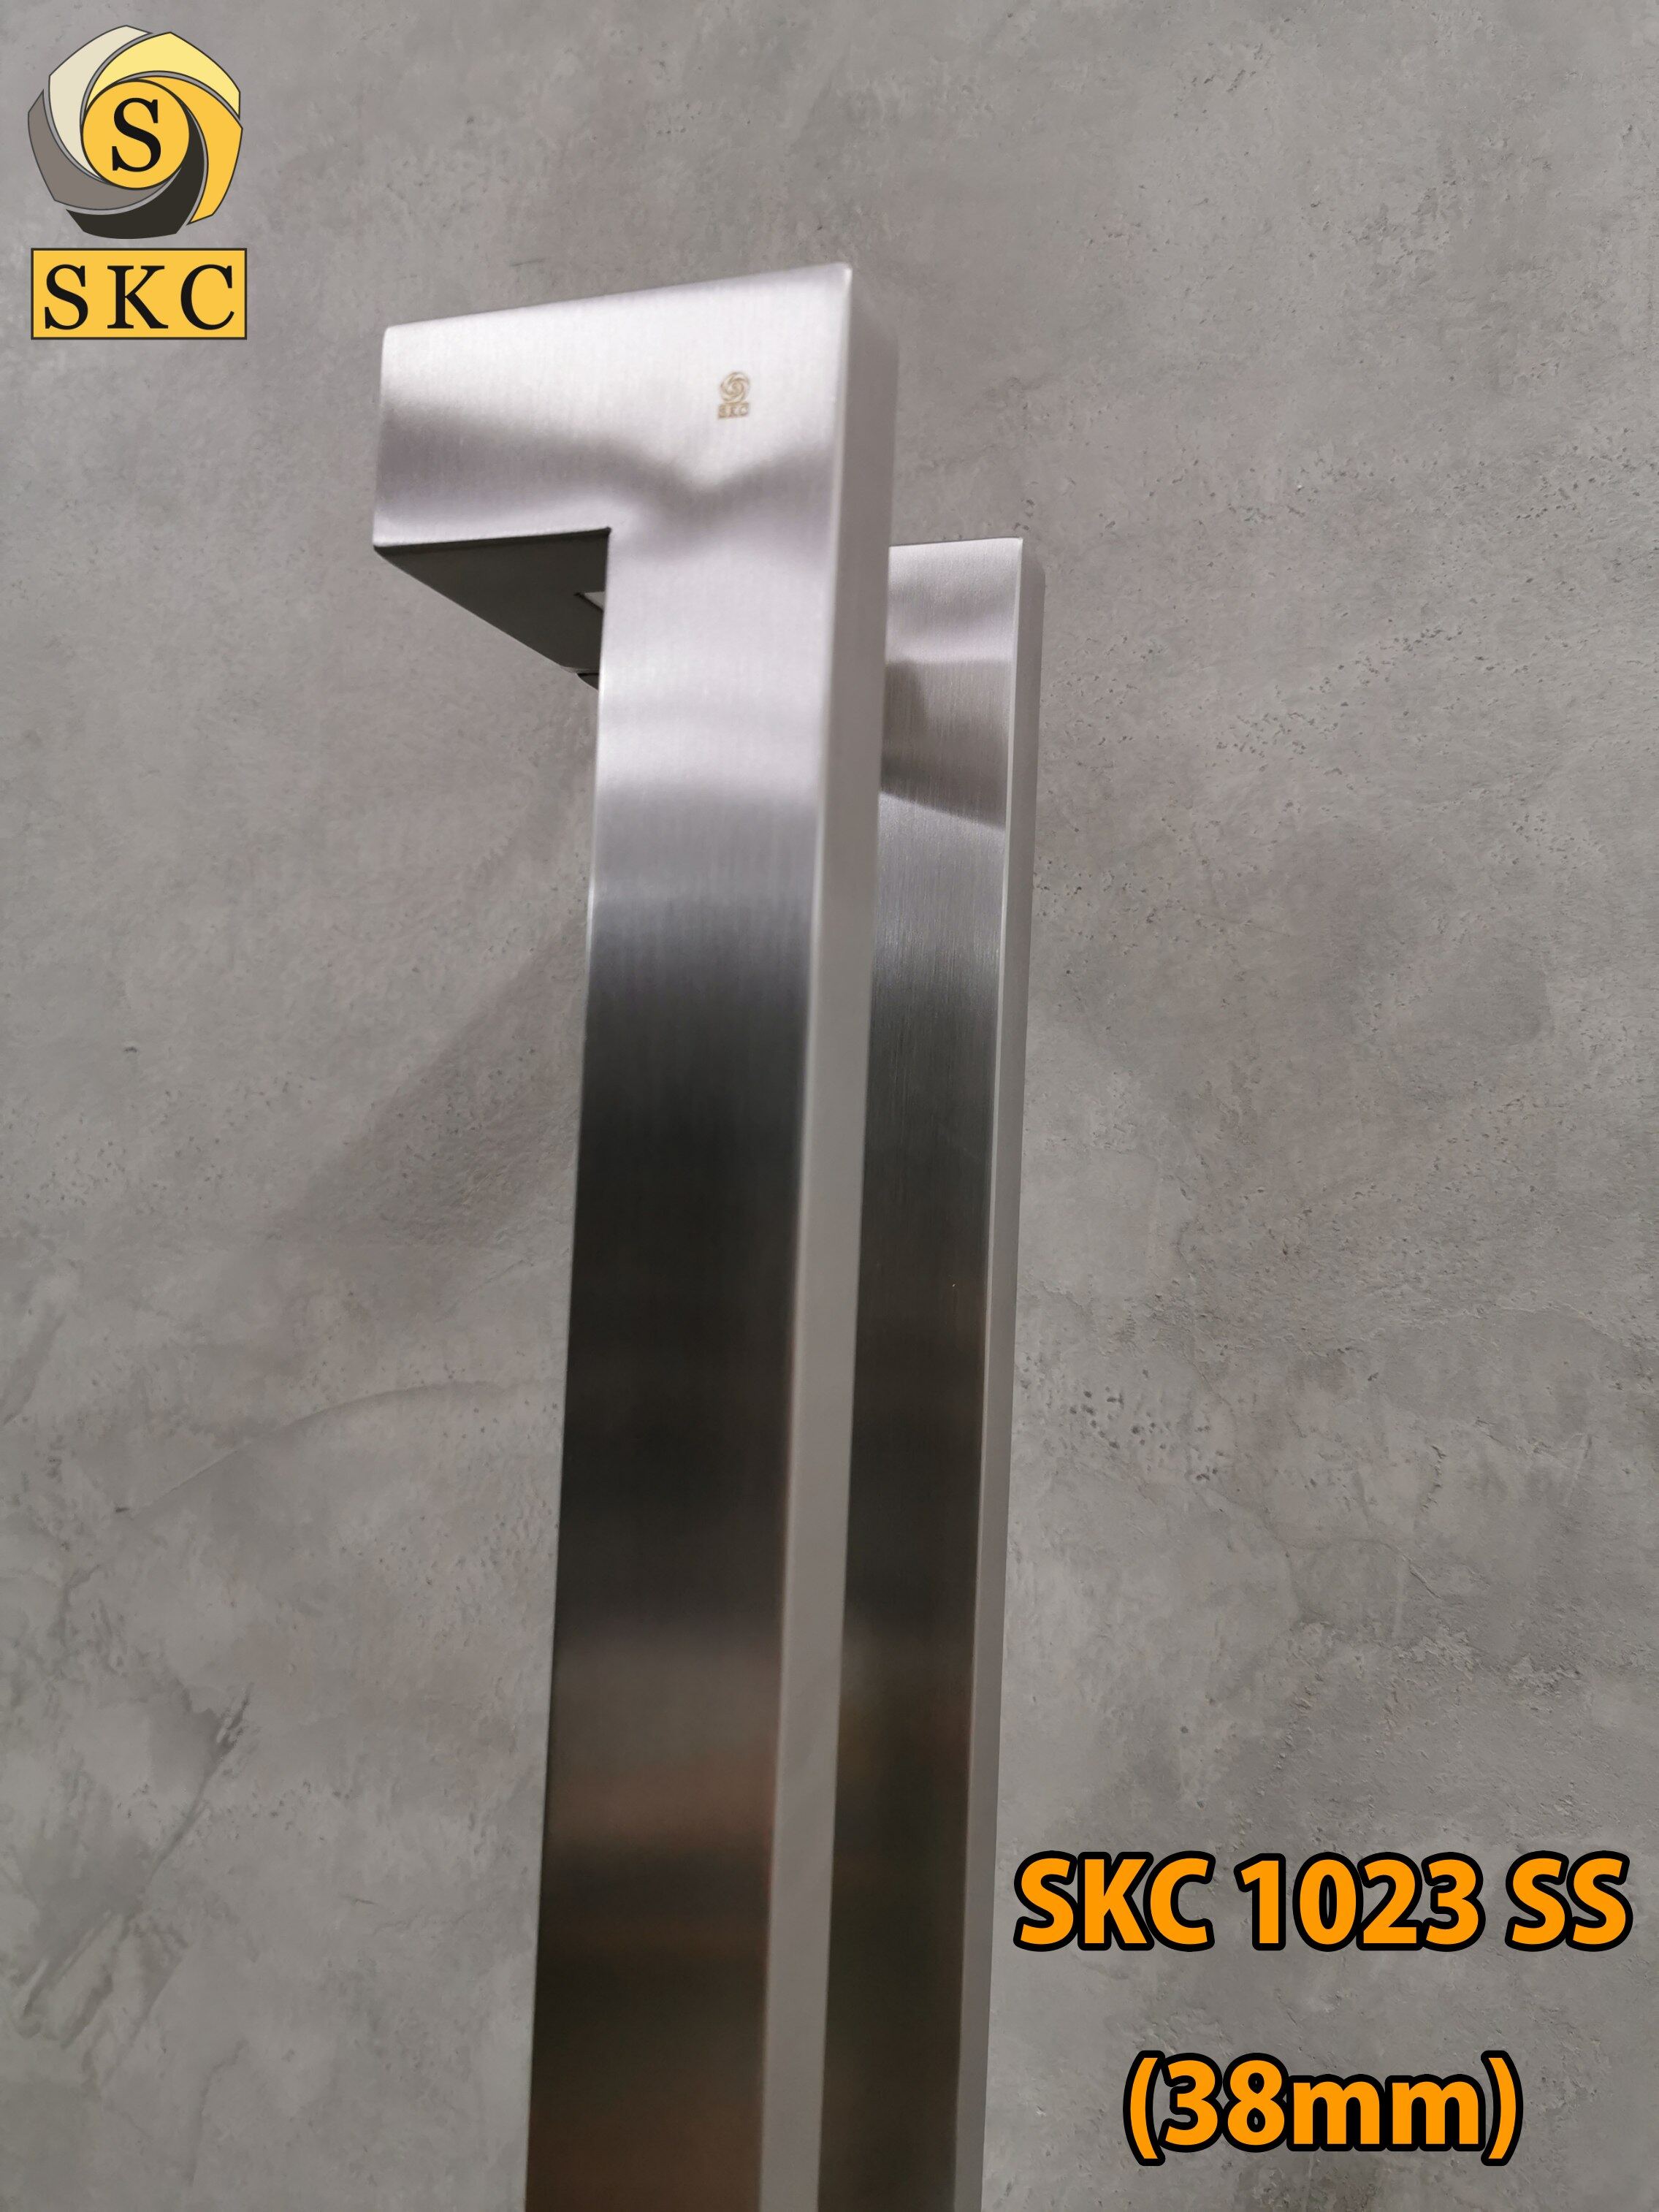 มือจับประตู SKC 1023 (38) ยาว 1.20 มือจับ ประตู อลูมิเนียม ประตูไม้ กระจก สี สเตนเลส สีดำ สี สีสเตนเลสด้าน